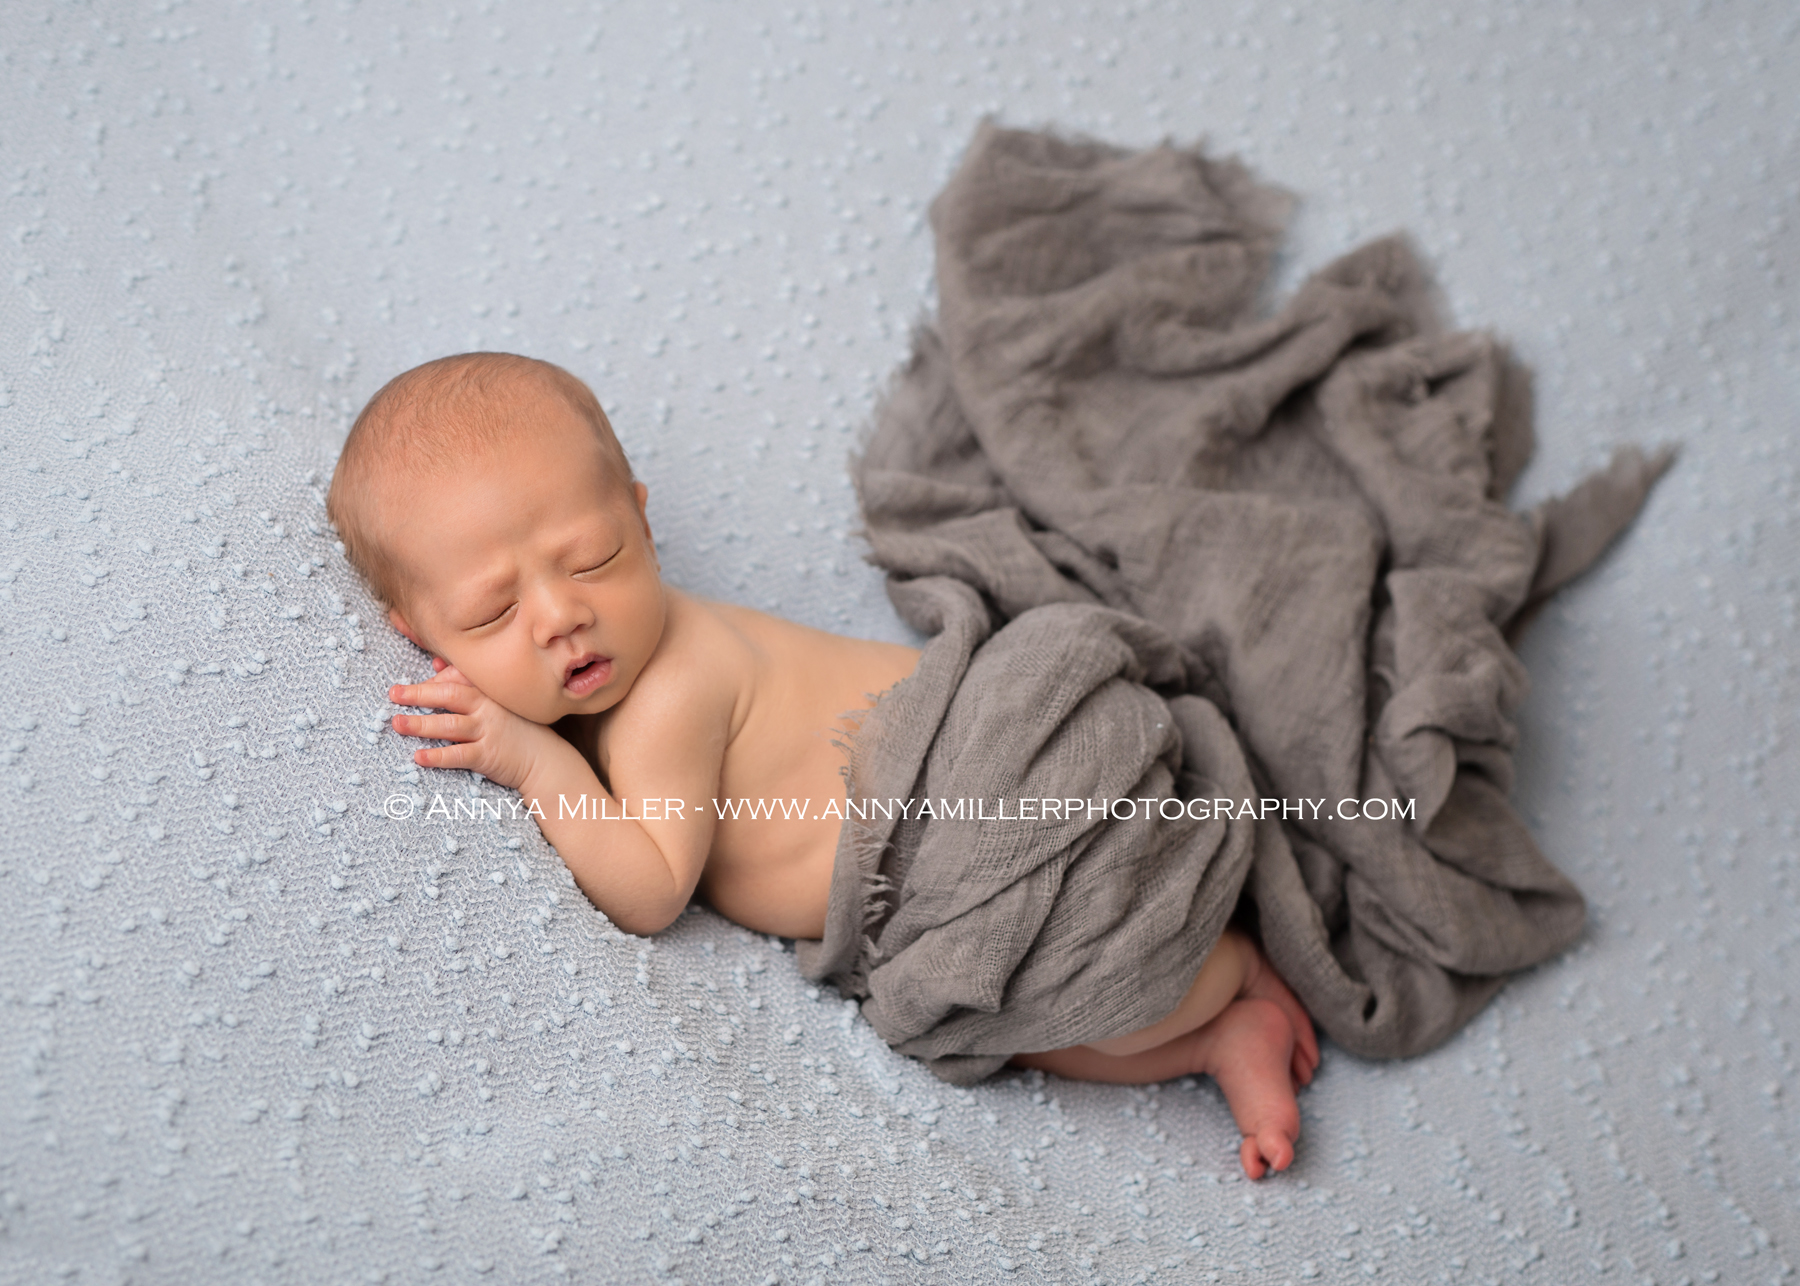 newborn photography in Durham region by Annya Miller 